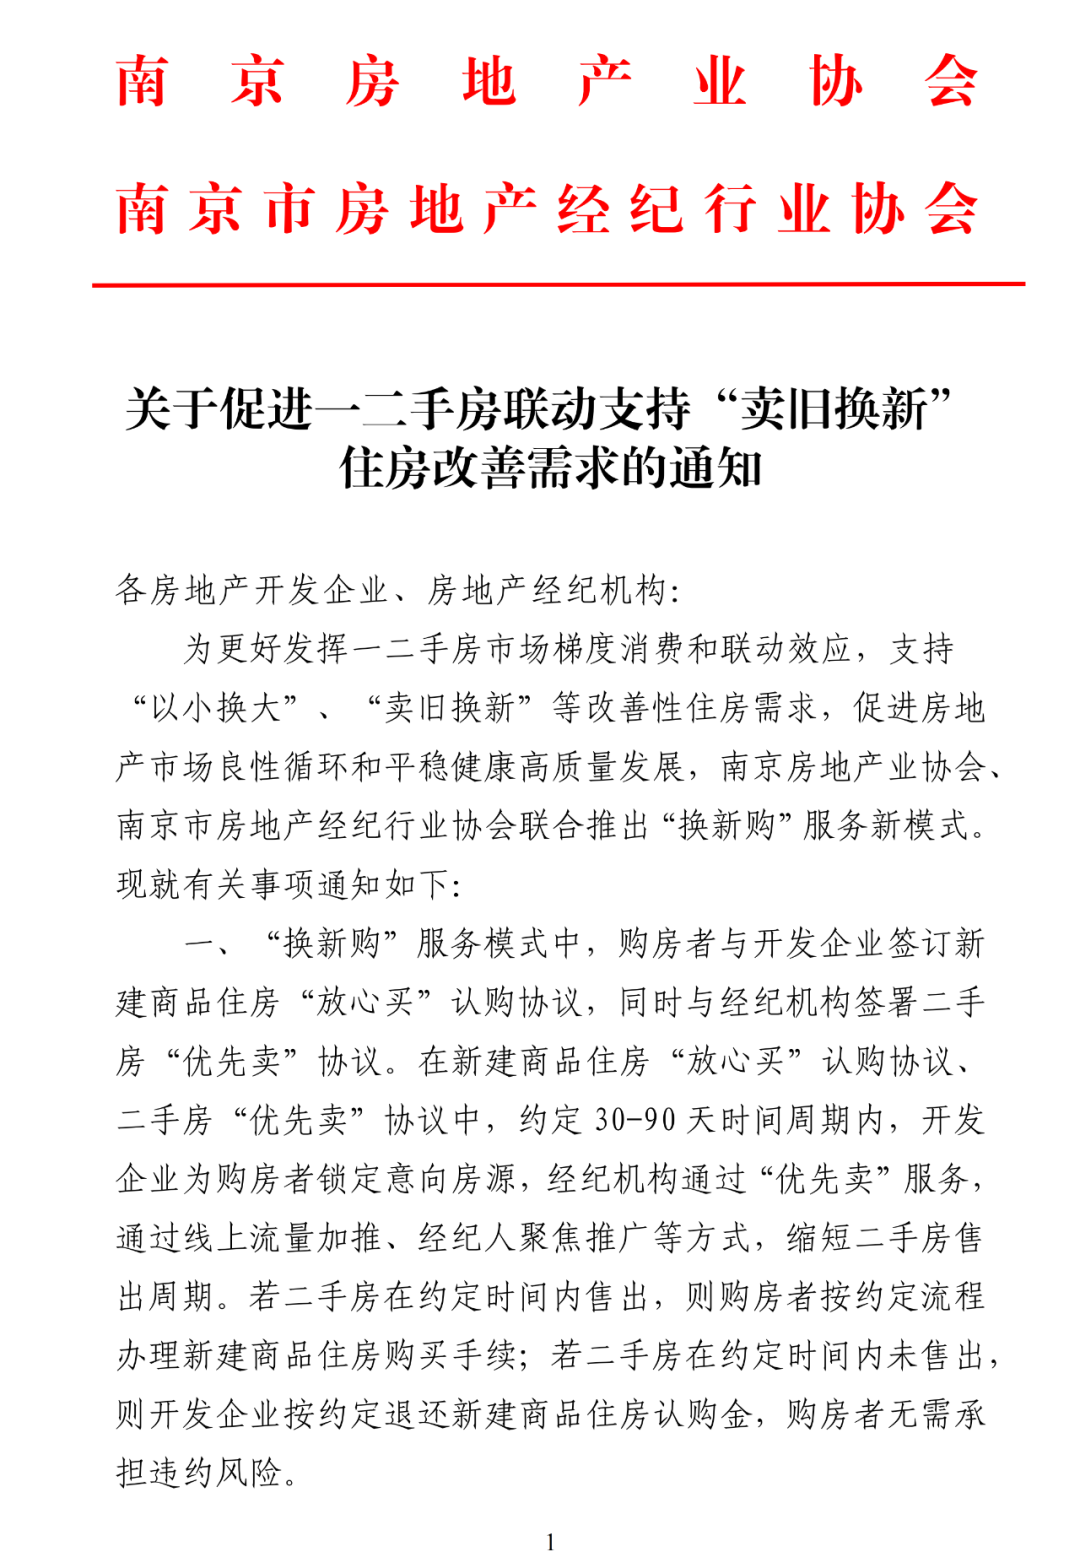 南京：玄武区等四区范围内不再需要购房证明，推出“换新购”服务